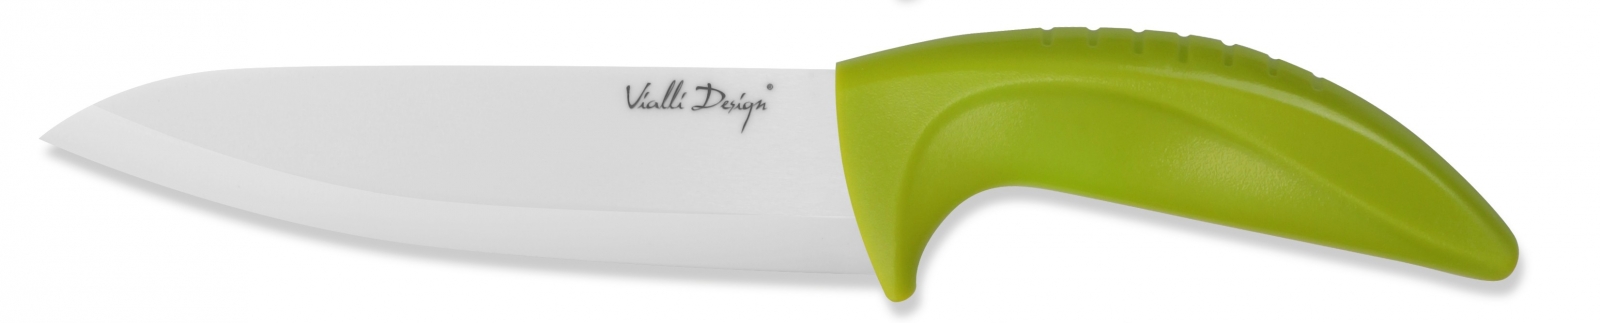 Nóż ceramiczny szefa kuchni 15 cm W150AG Vialli Design